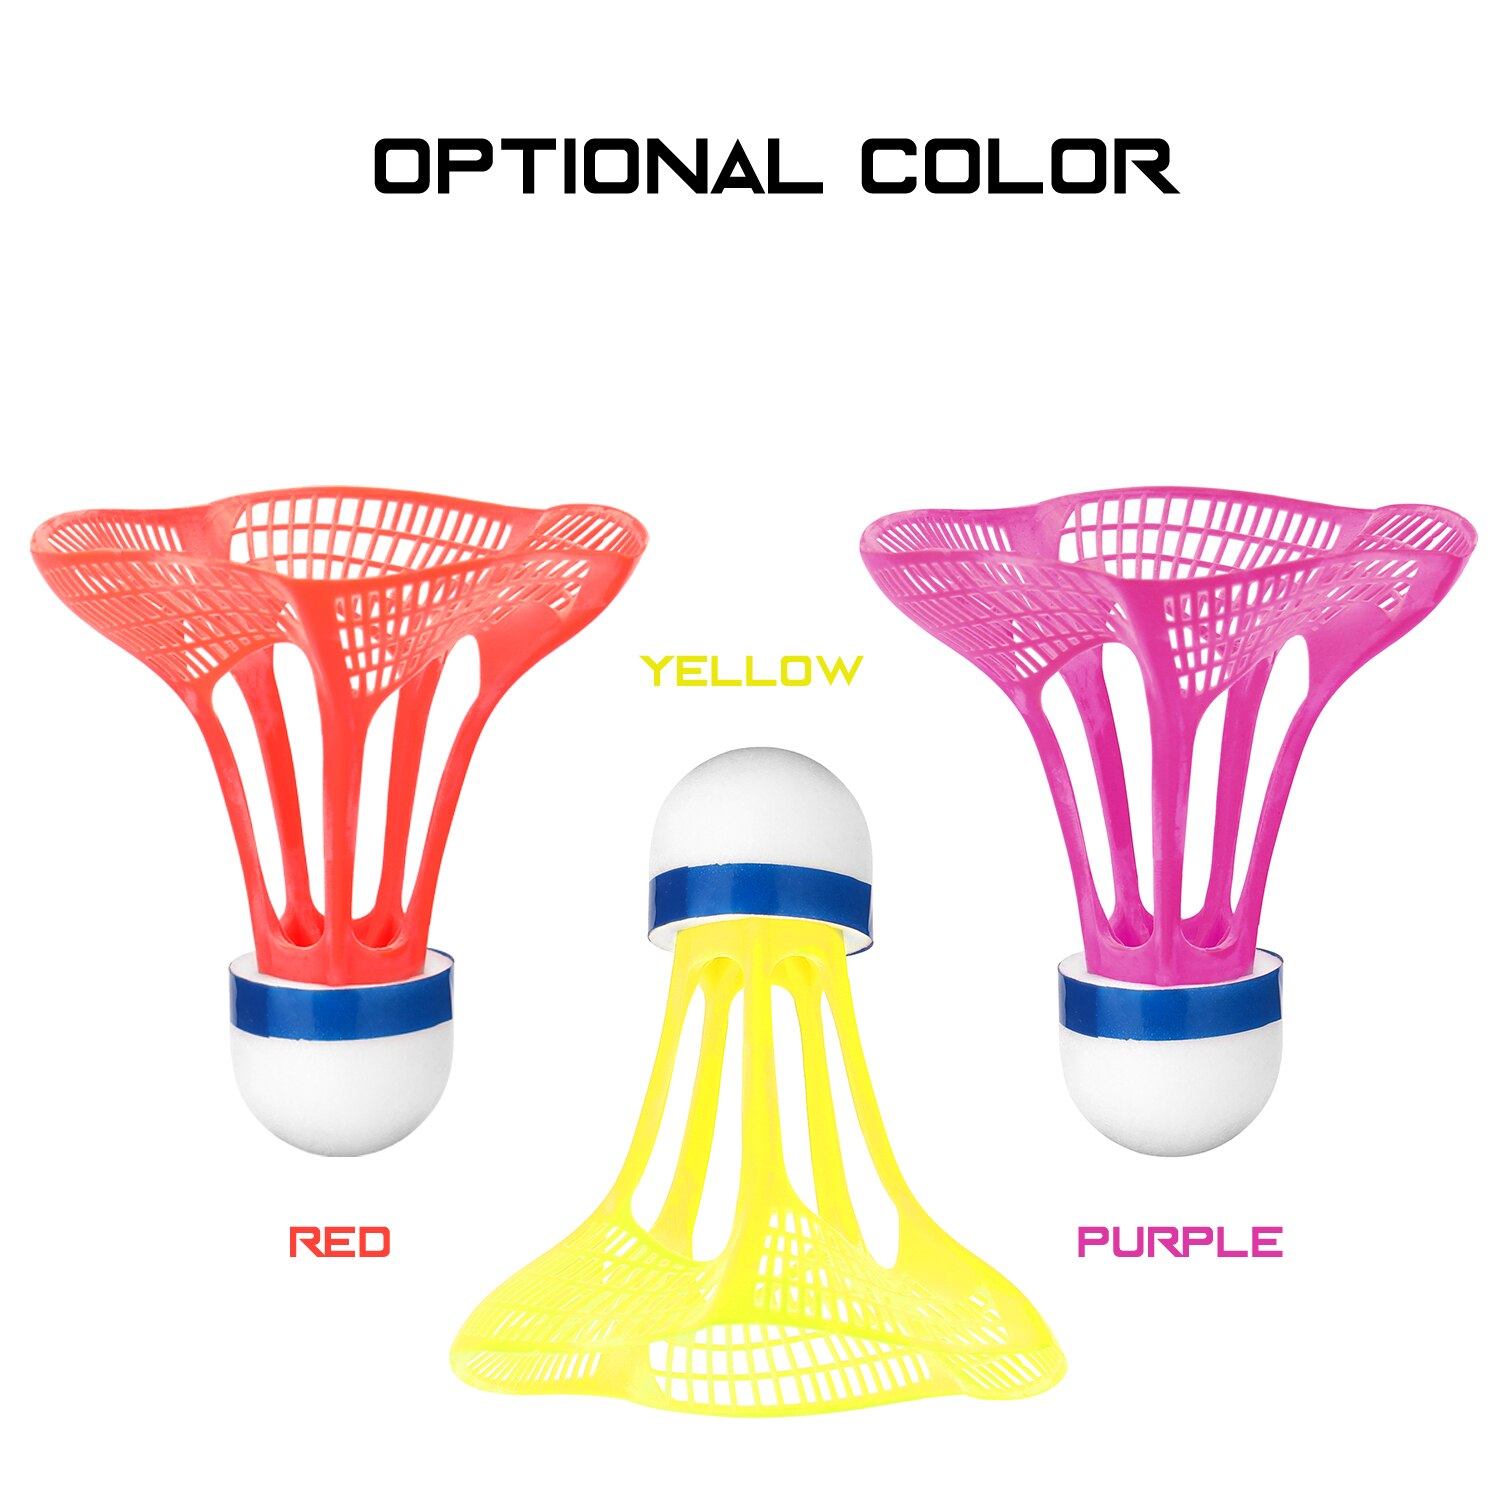 3 stk / pakke udendørs badmintonbold plastbold sport træning træningsbolte farve badmintonbold